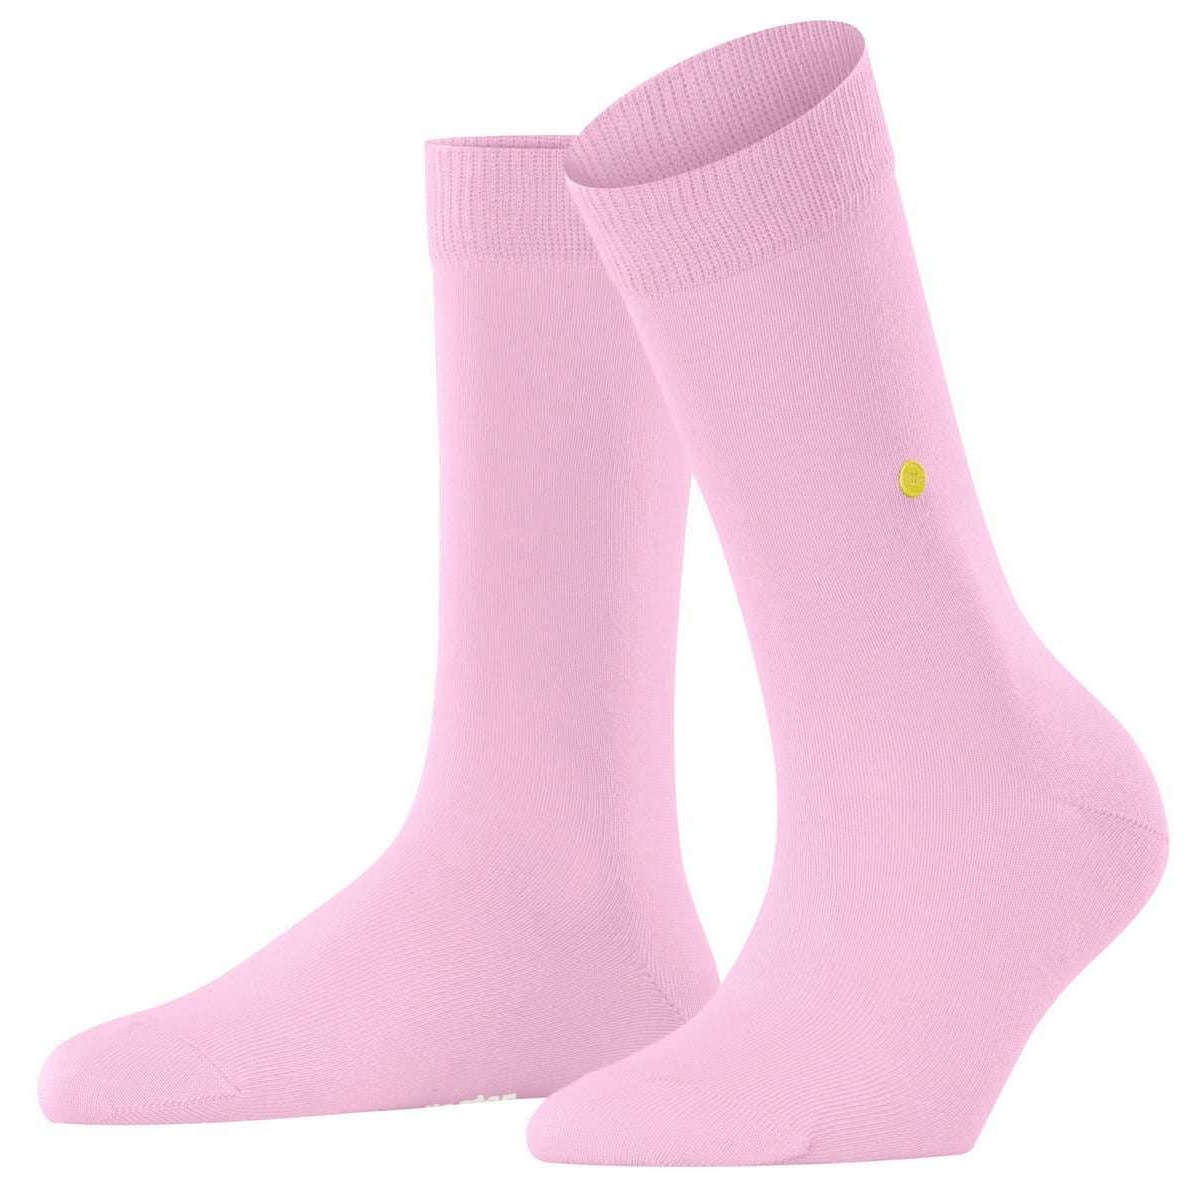 Burlington Lady Socks - Sporty Rose Pink